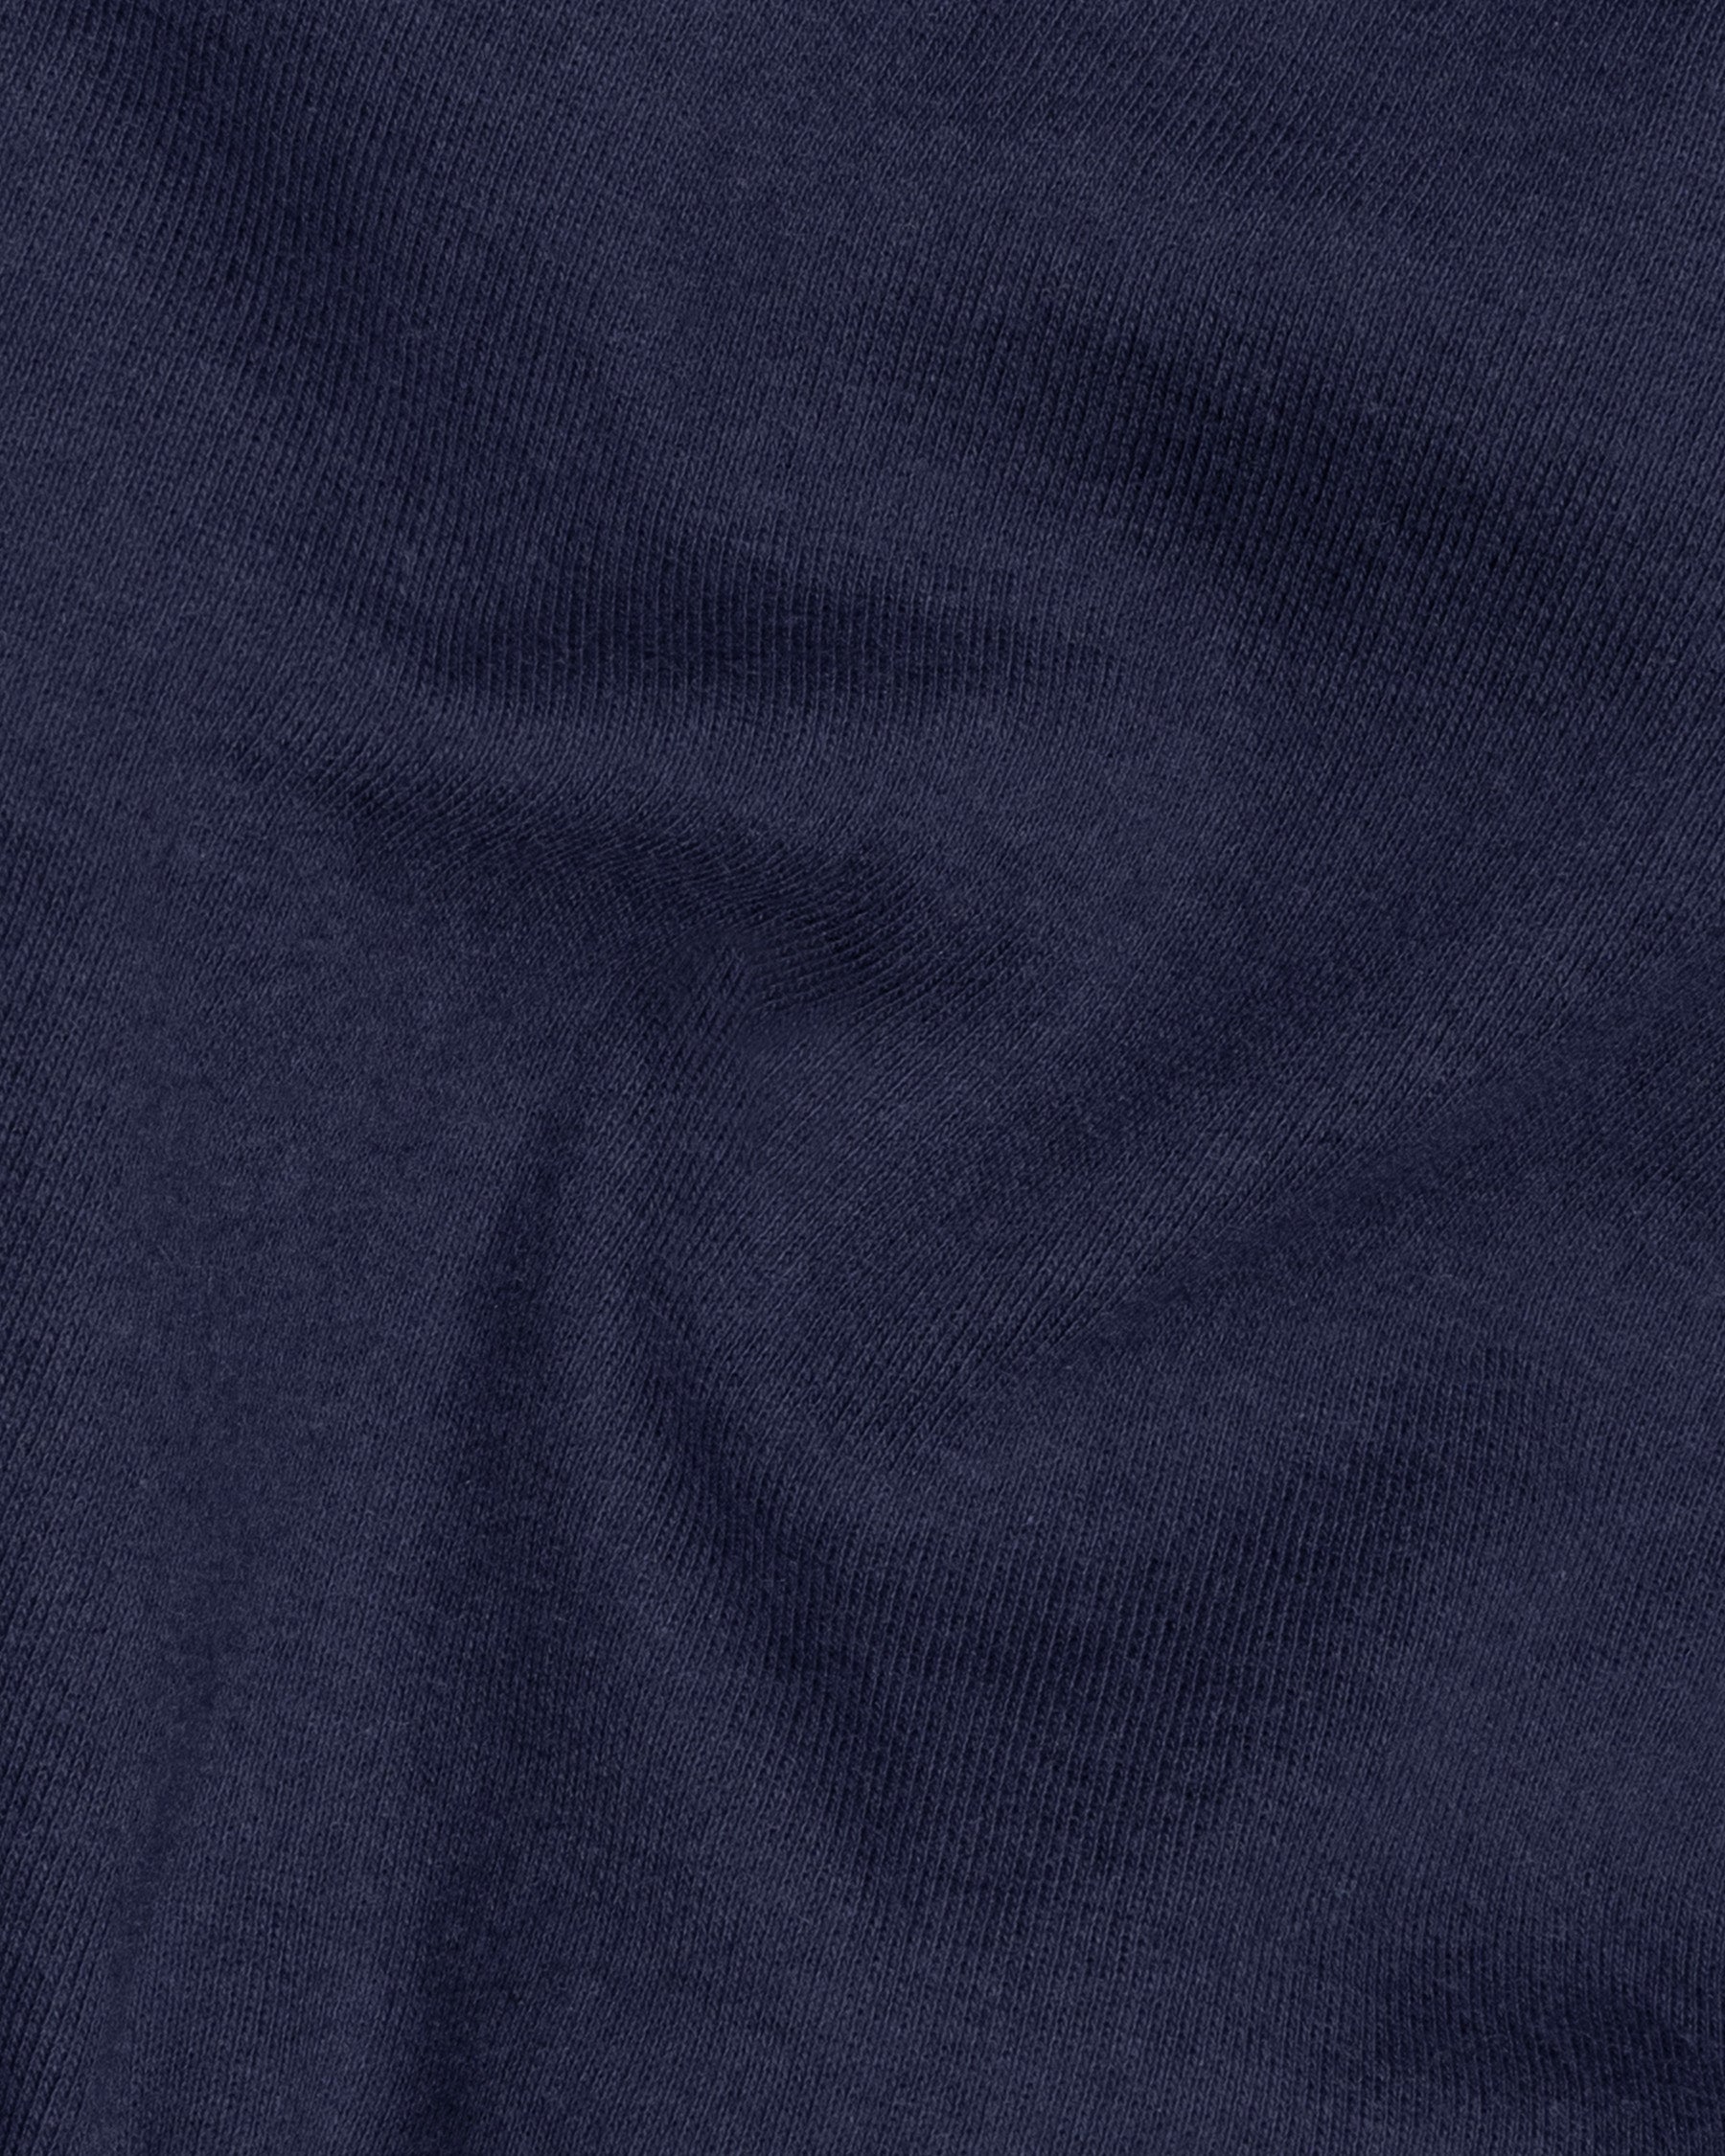 Ebony Clay Blue Full Sleeve Super Soft Premium Cotton Sweatshirt TS463-S, TS463-M, TS463-L, TS463-XL, TS463-XXL